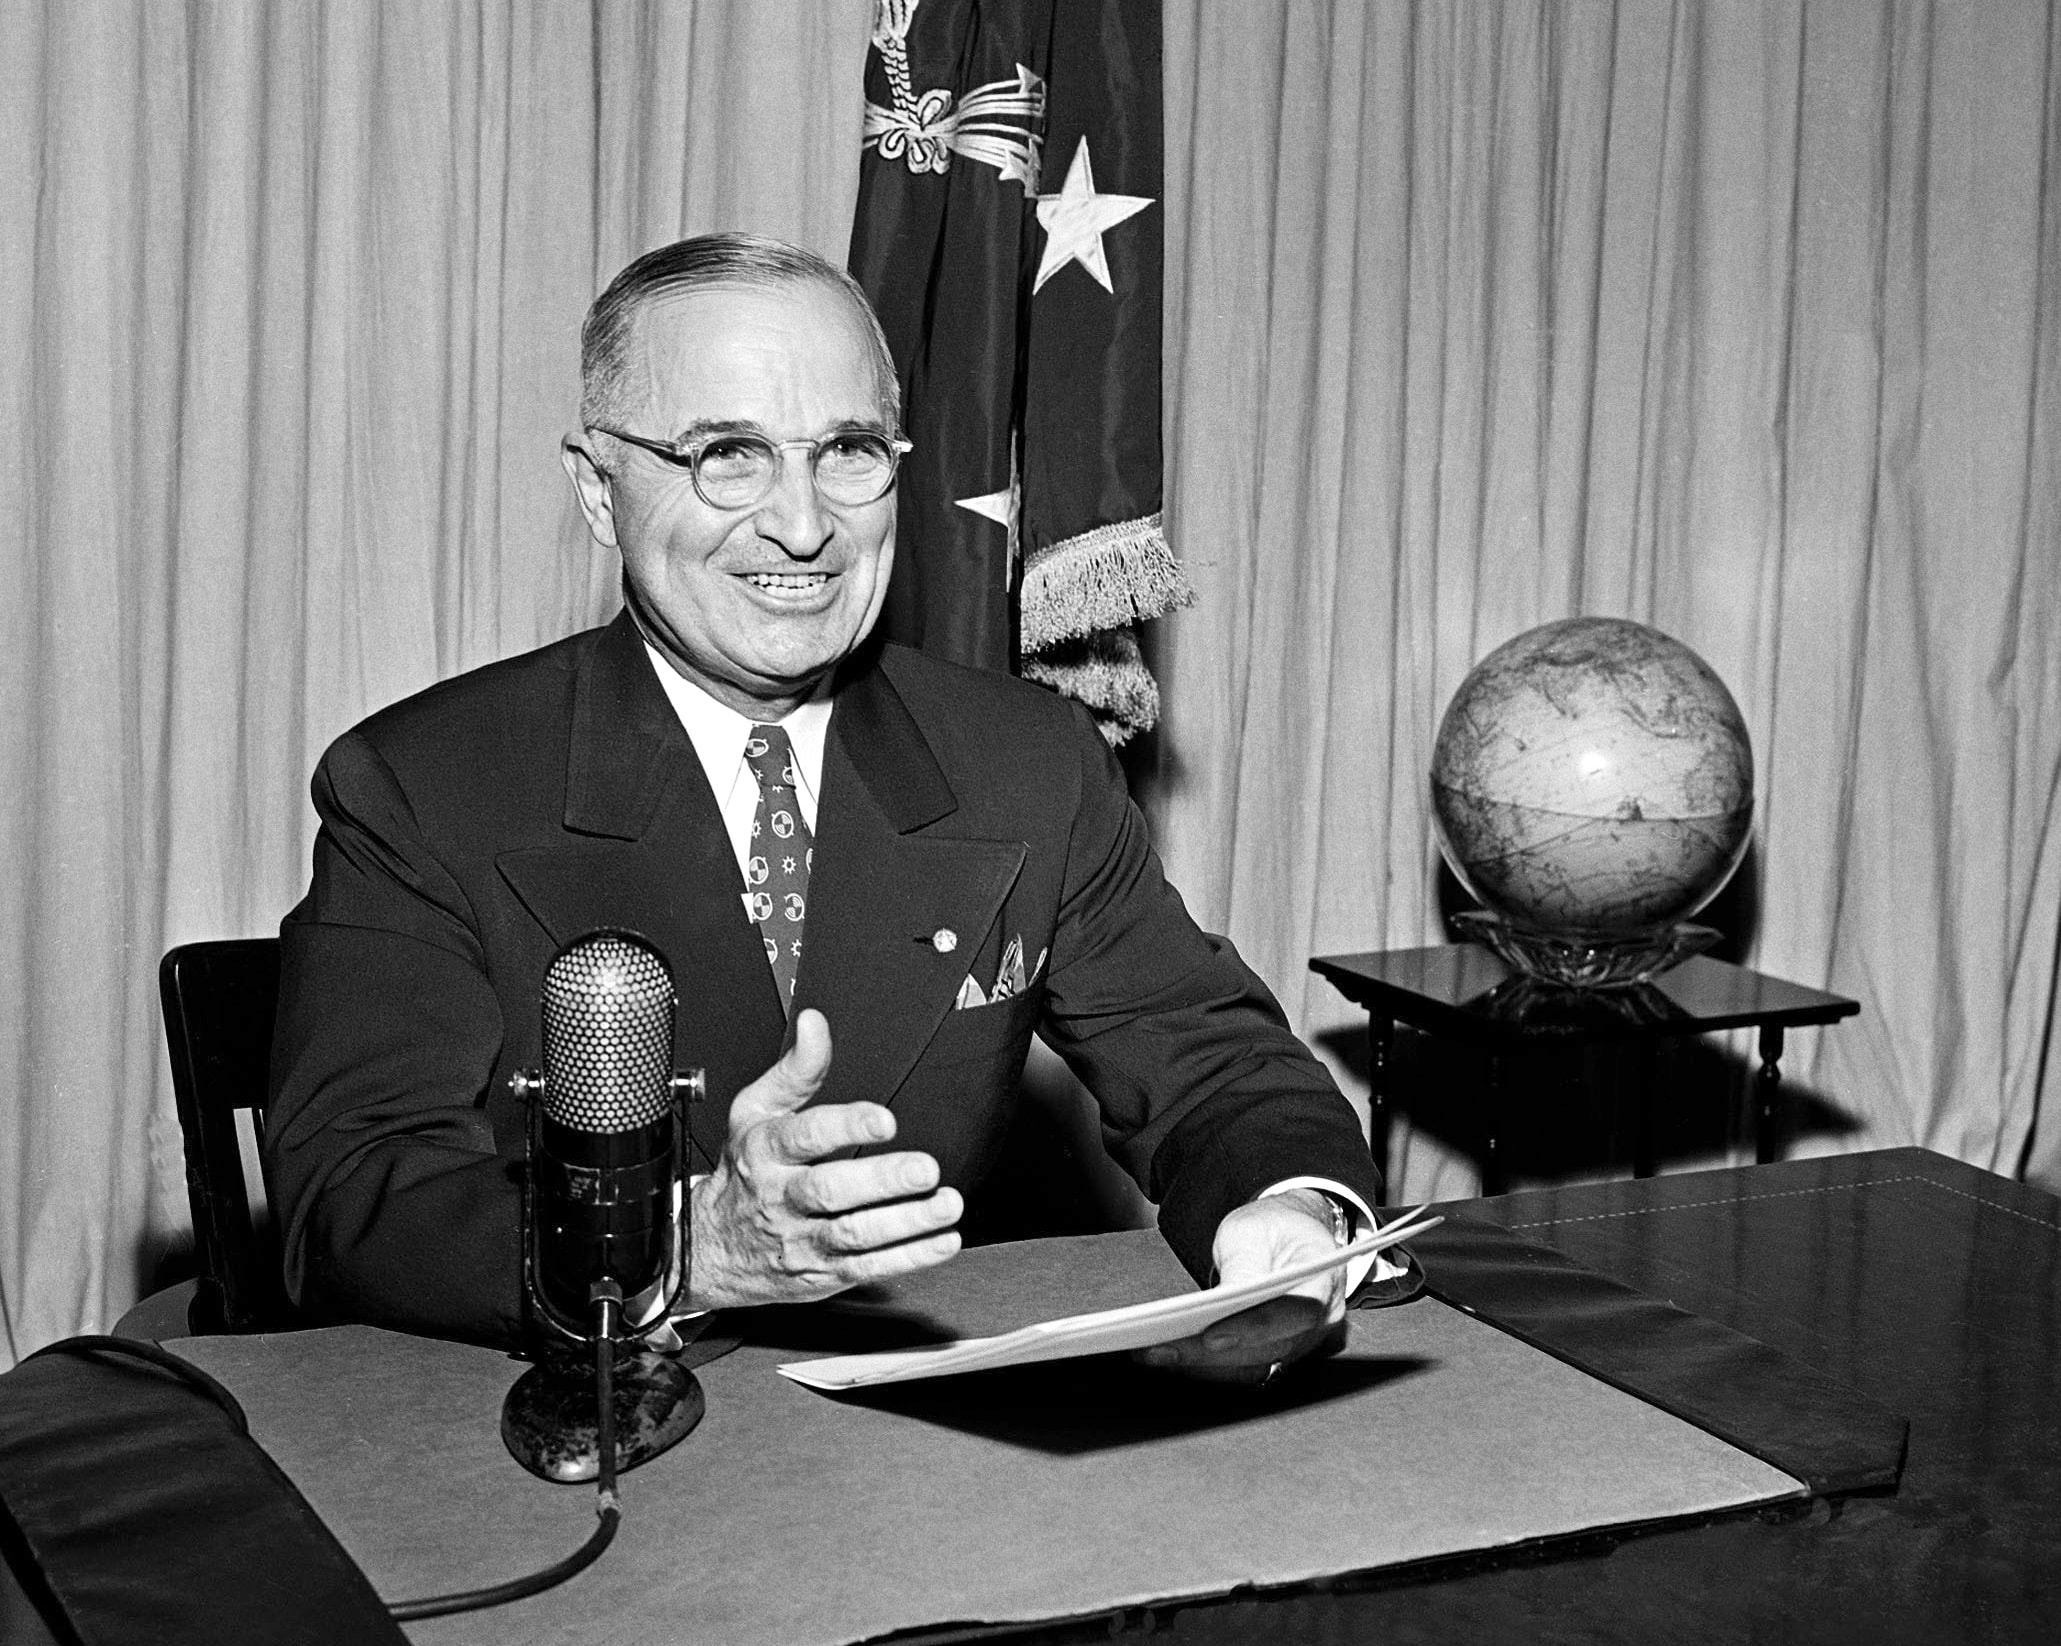 הנשיא הארי טרומן משדר לאומה את הבשורה שיפן נכנעה רשמית, 1 בספטמבר 1945 (צילום: AP Photo)